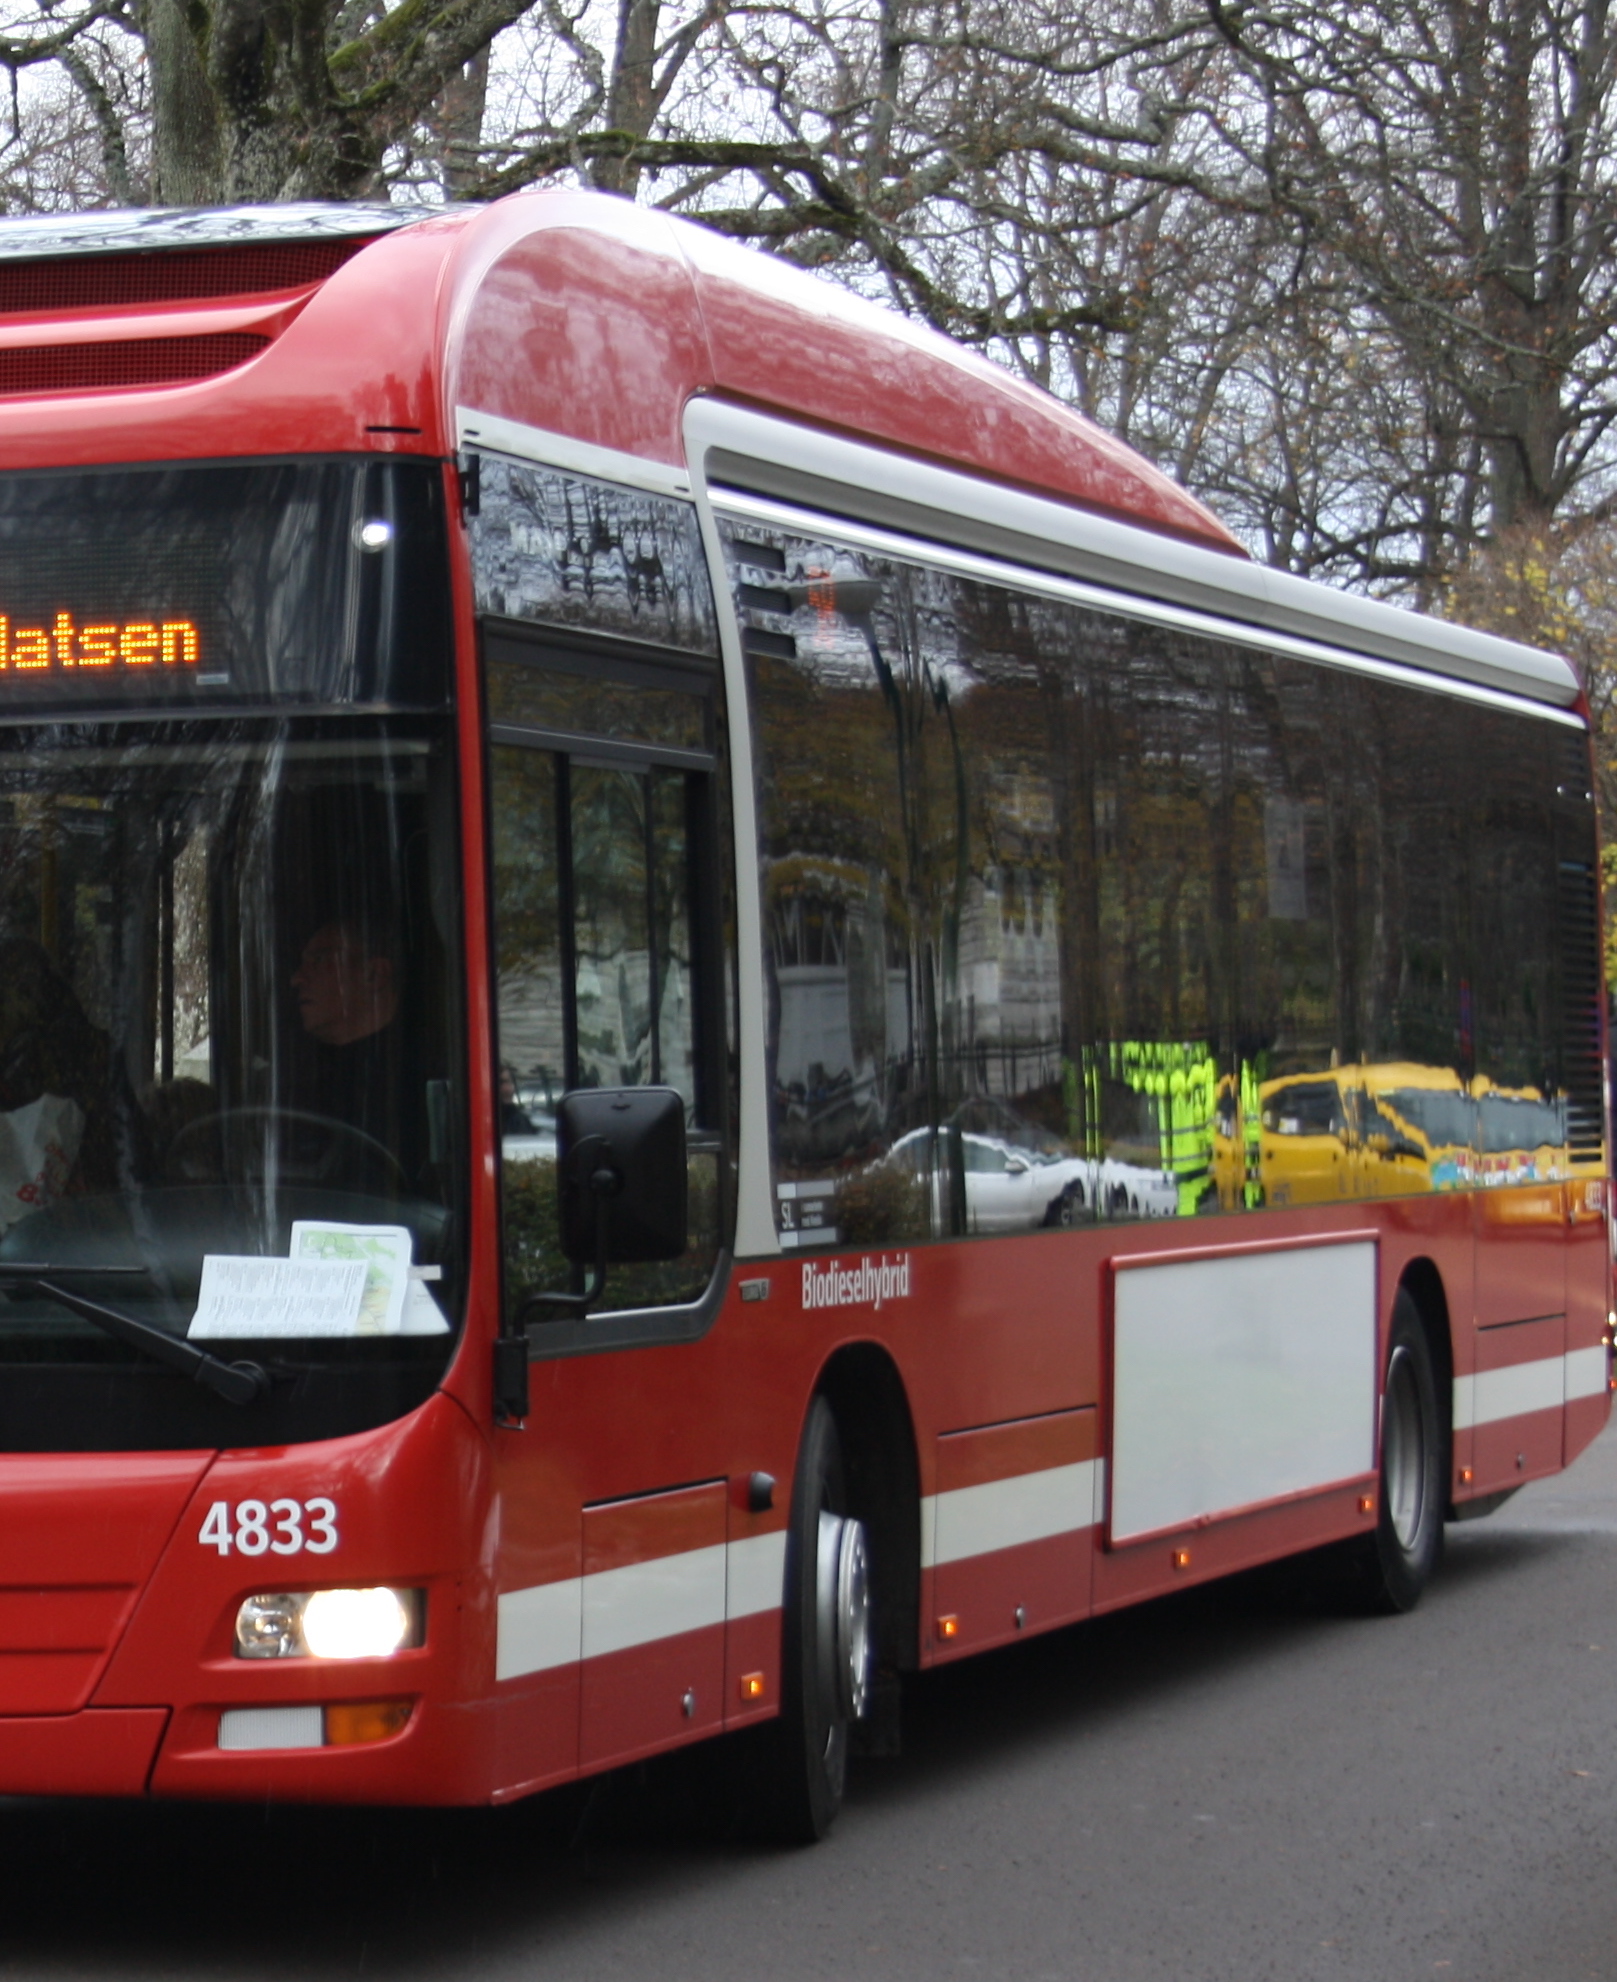 Syntolkning:
Röd stadsbuss, i bussens fönster speglas bilar och hus. 
